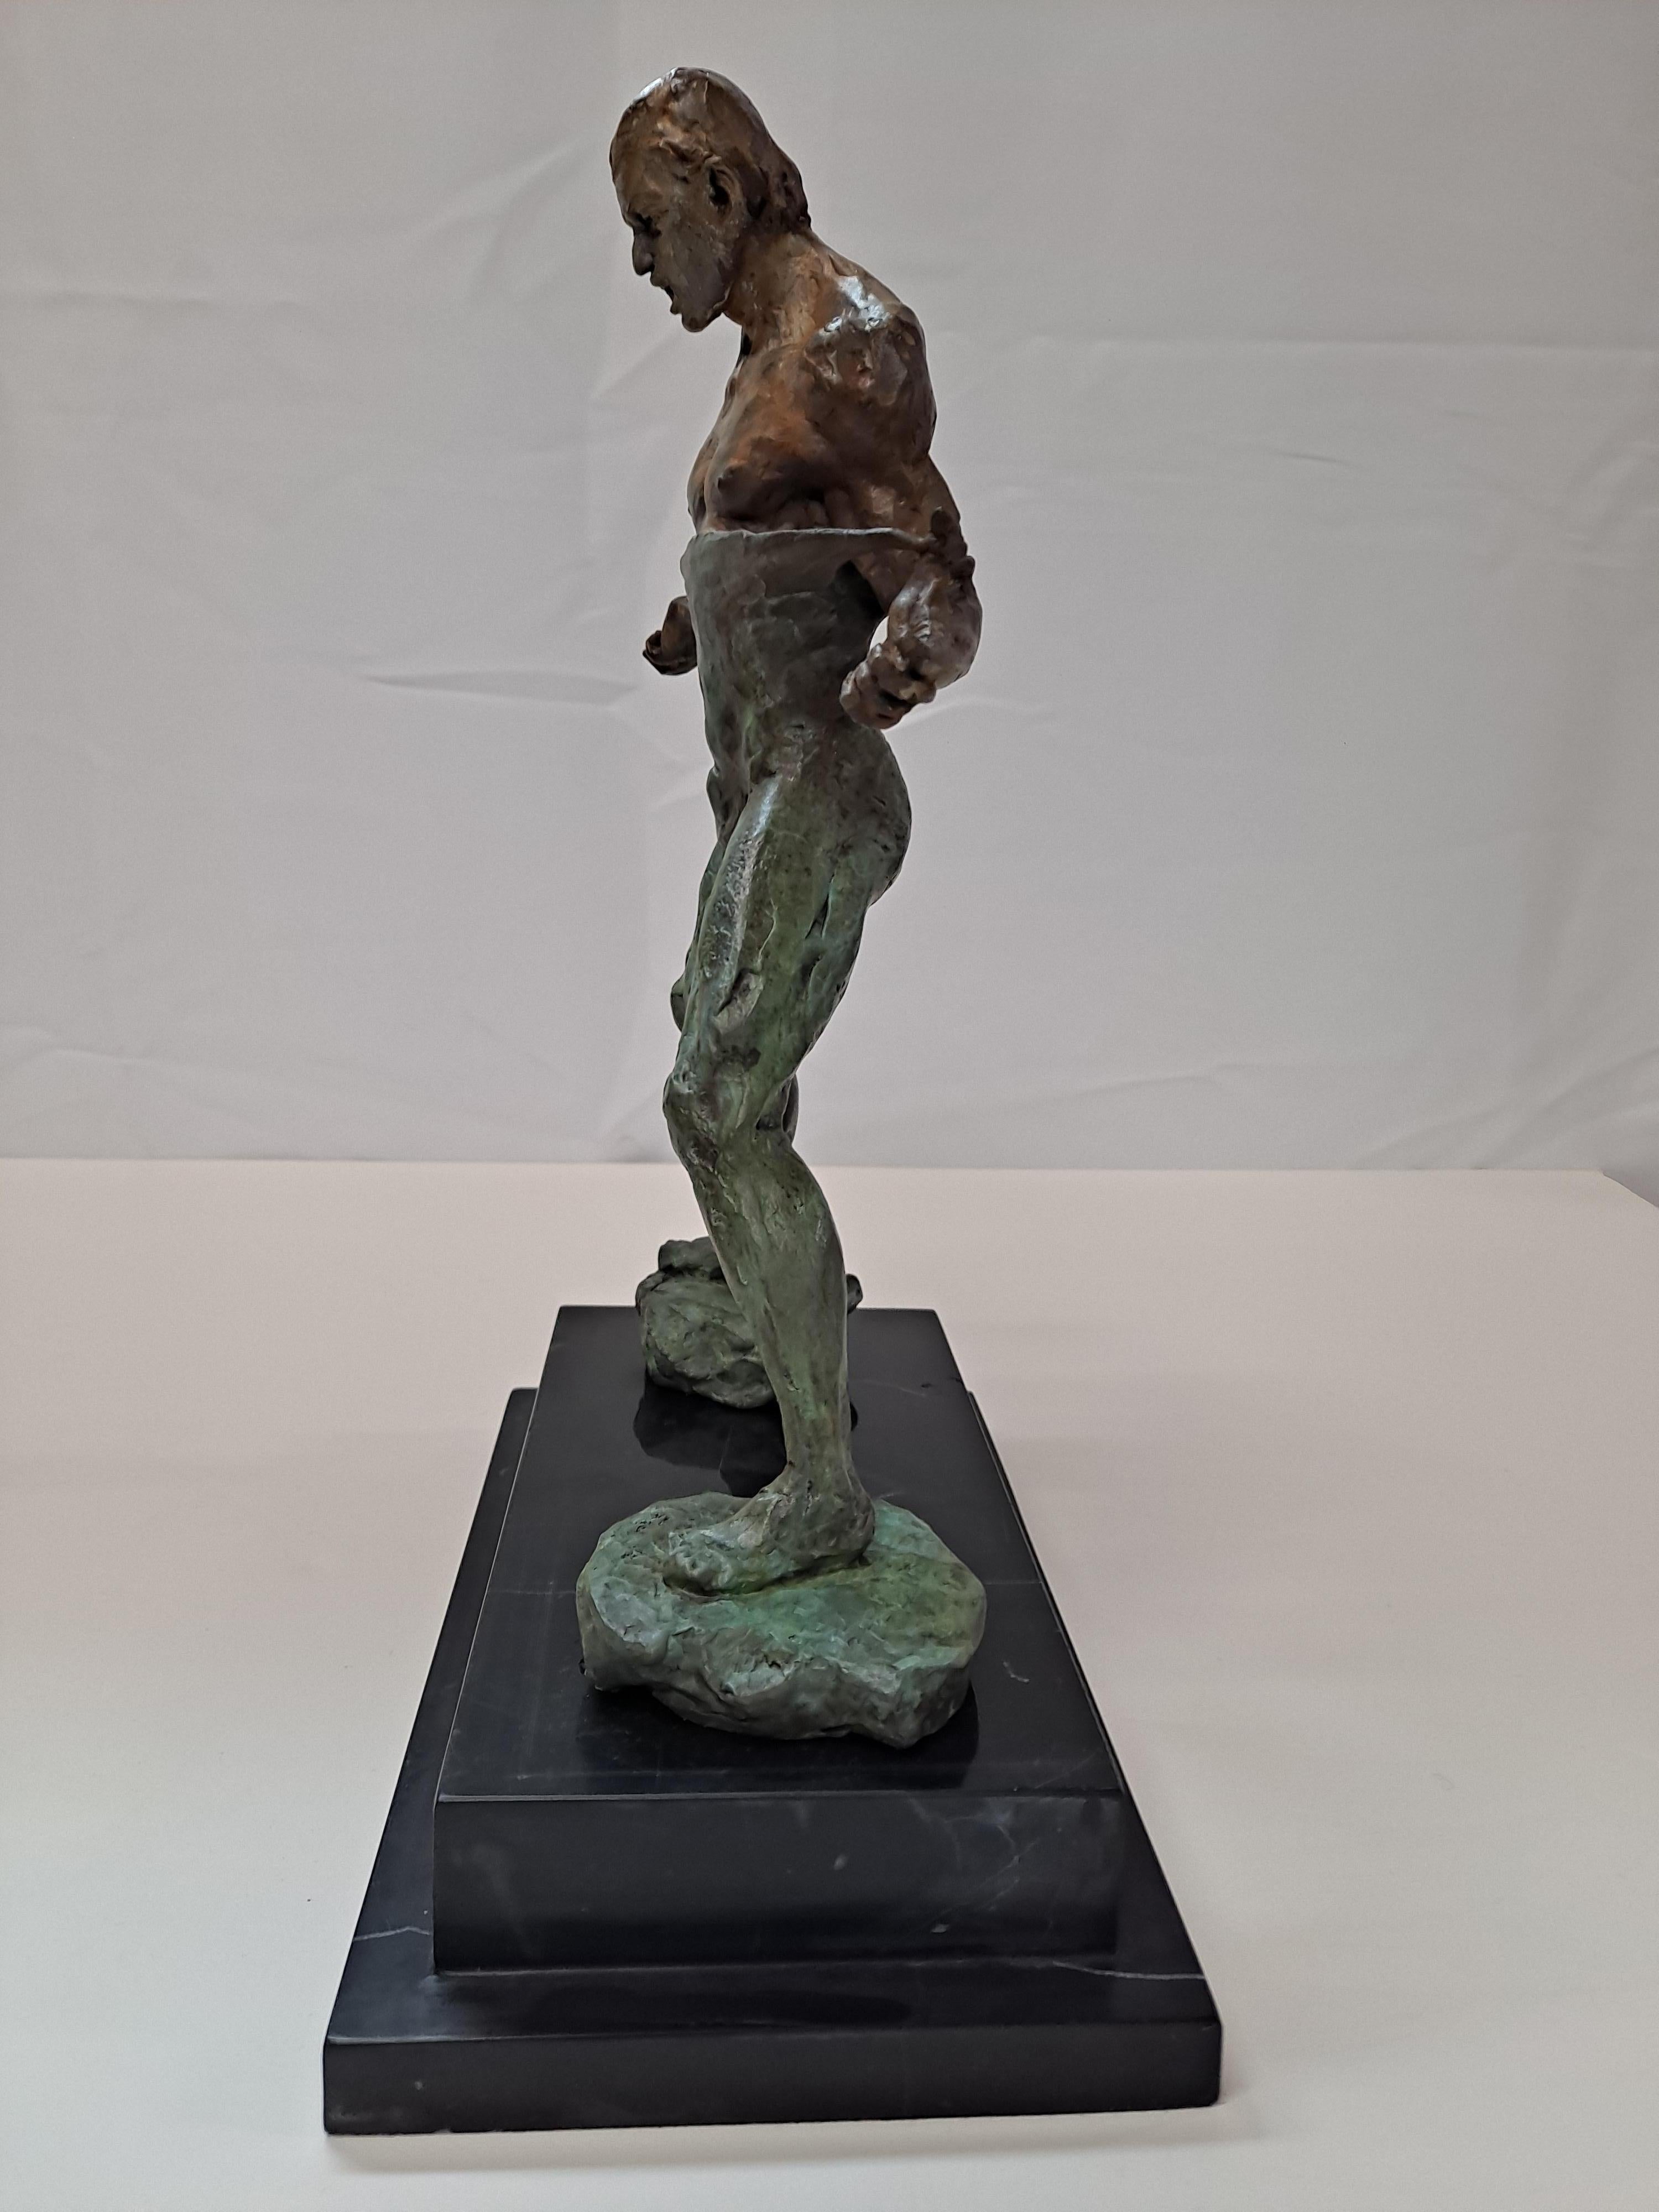 Sculpture en bronze d'un lutteur signée « Fisher » avec base en marbre

